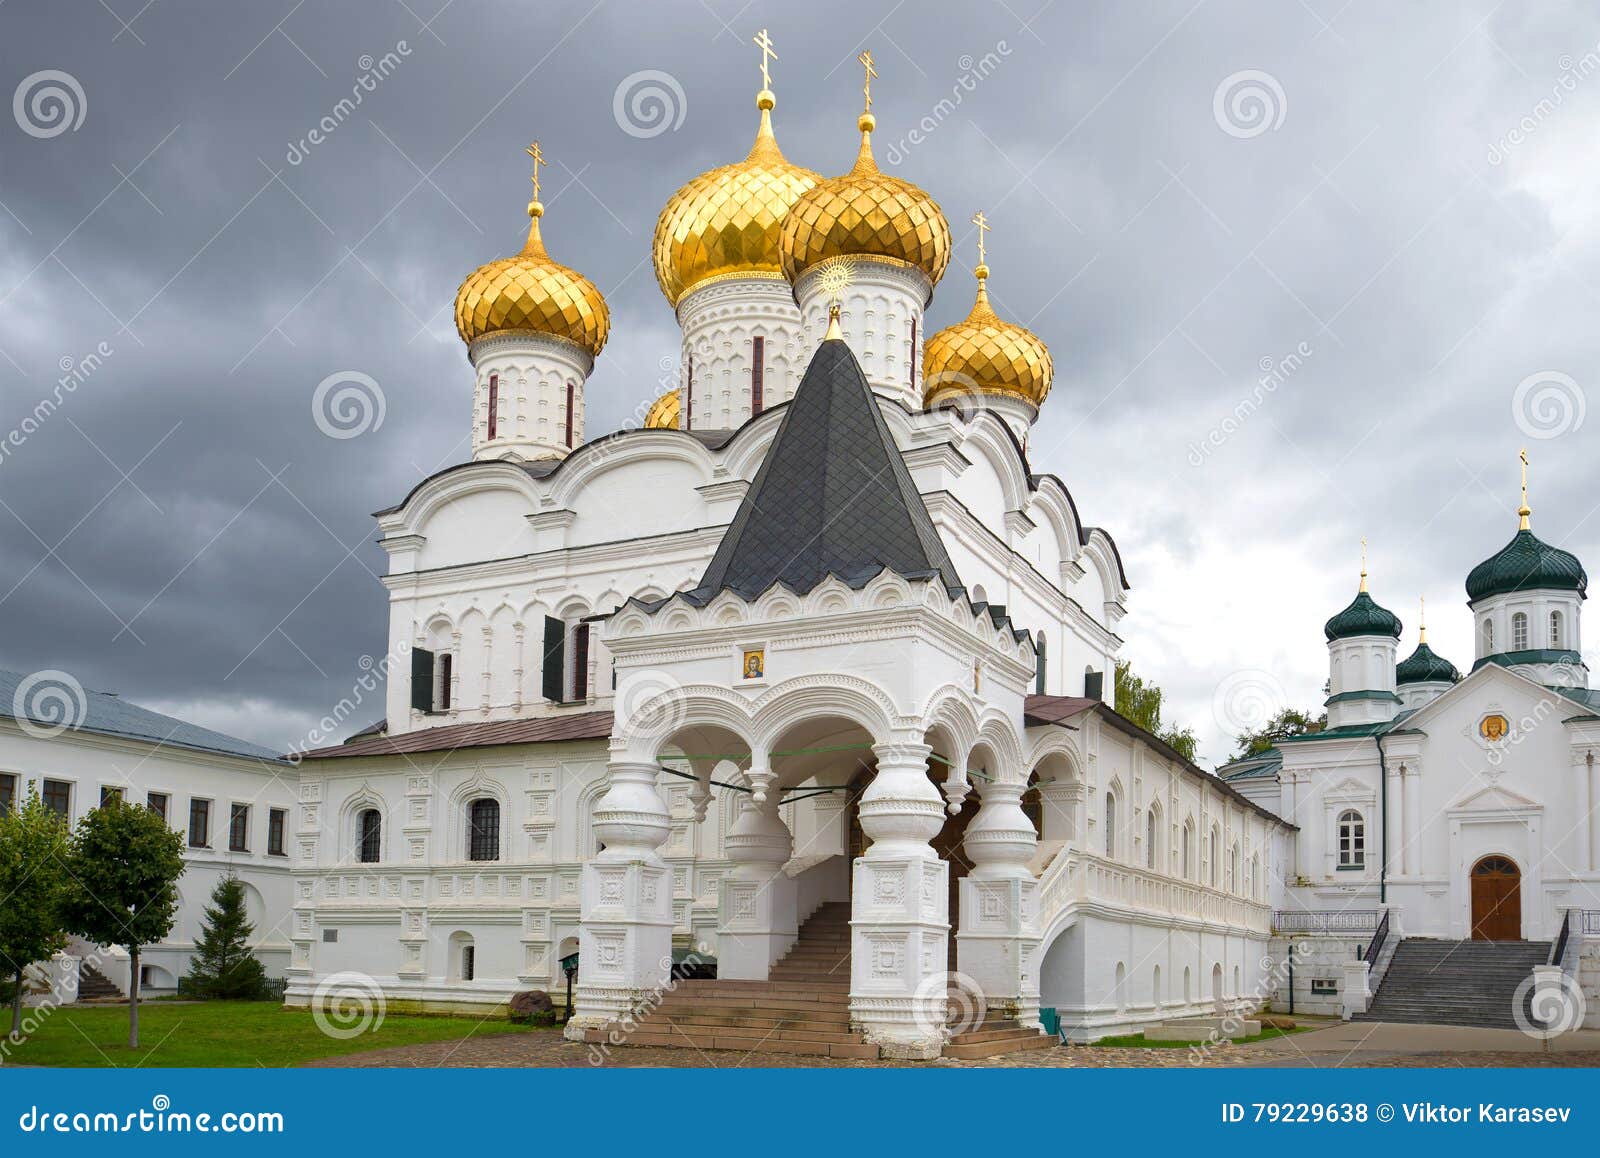 Главный монастырь россии золотого кольца. Золотое кольцо Ипатьевский монастырь в Костроме.